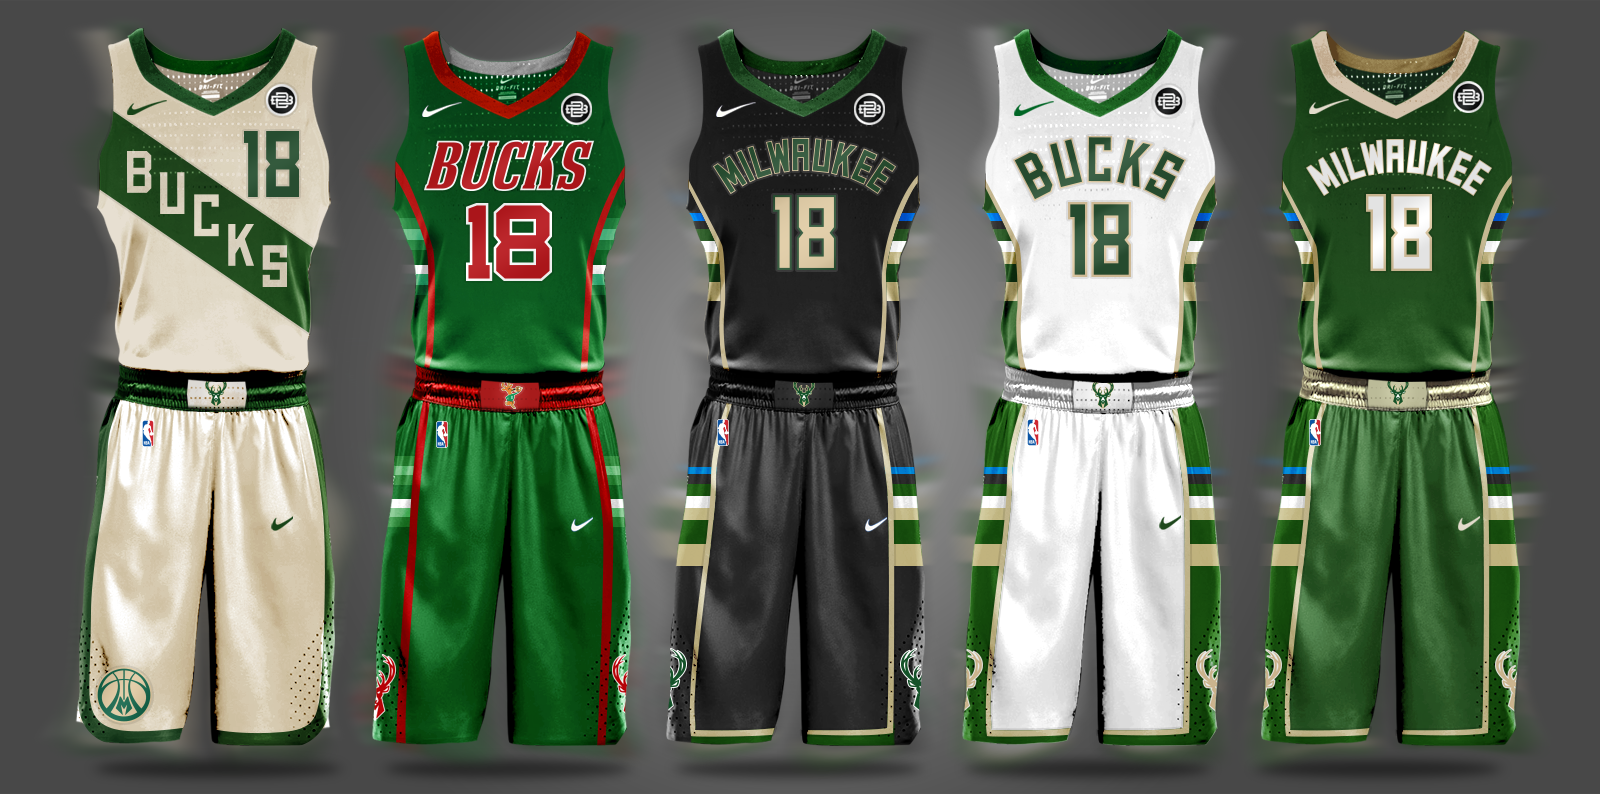 2018/19 NIKE x NBA Uniform Concepts